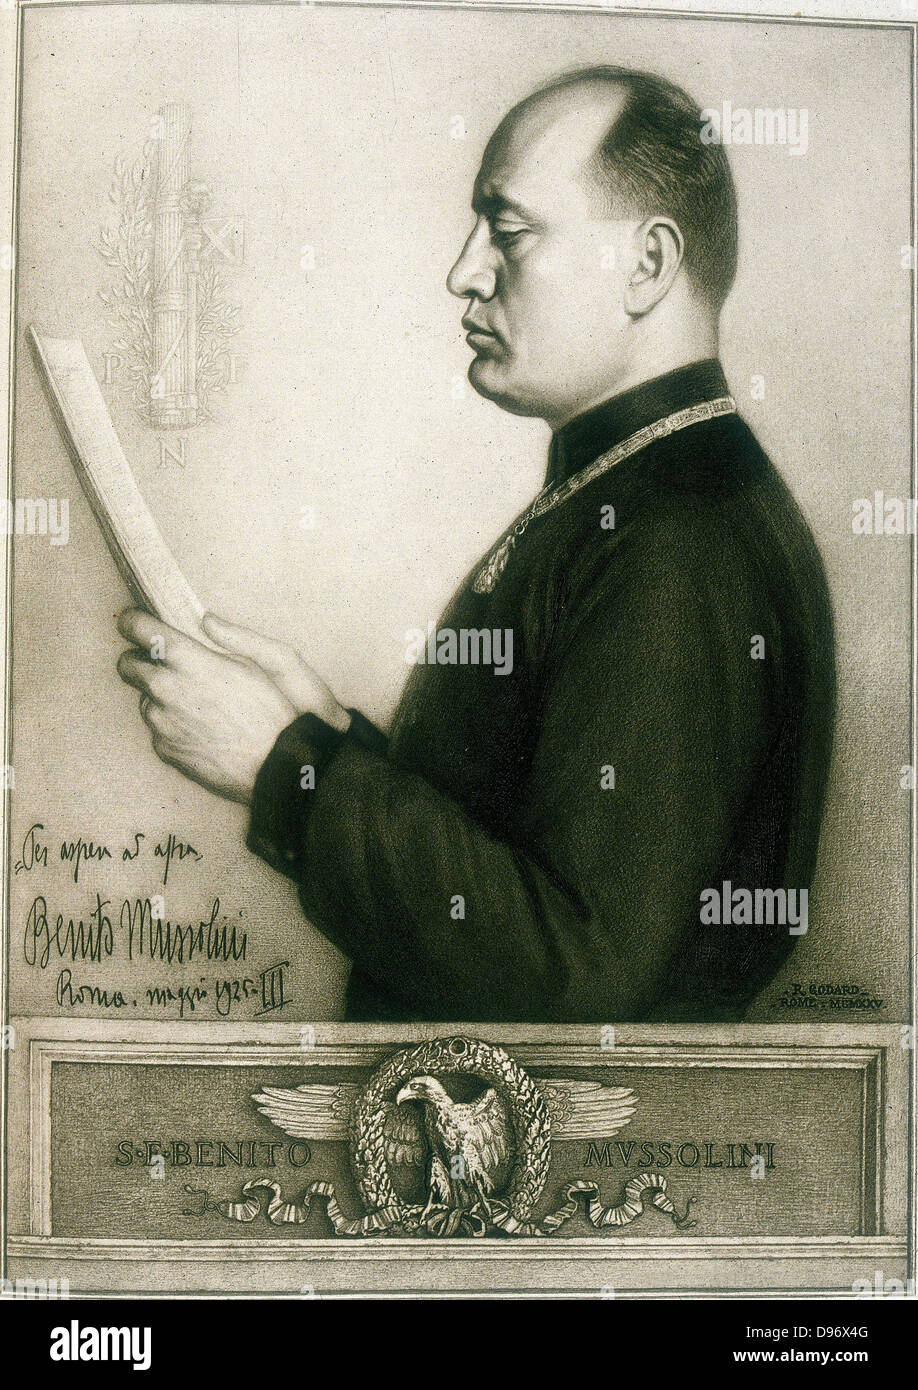 Benito Mussolini (1883-1945) Italian Fascist dictator. Rome 1925. Stock Photo